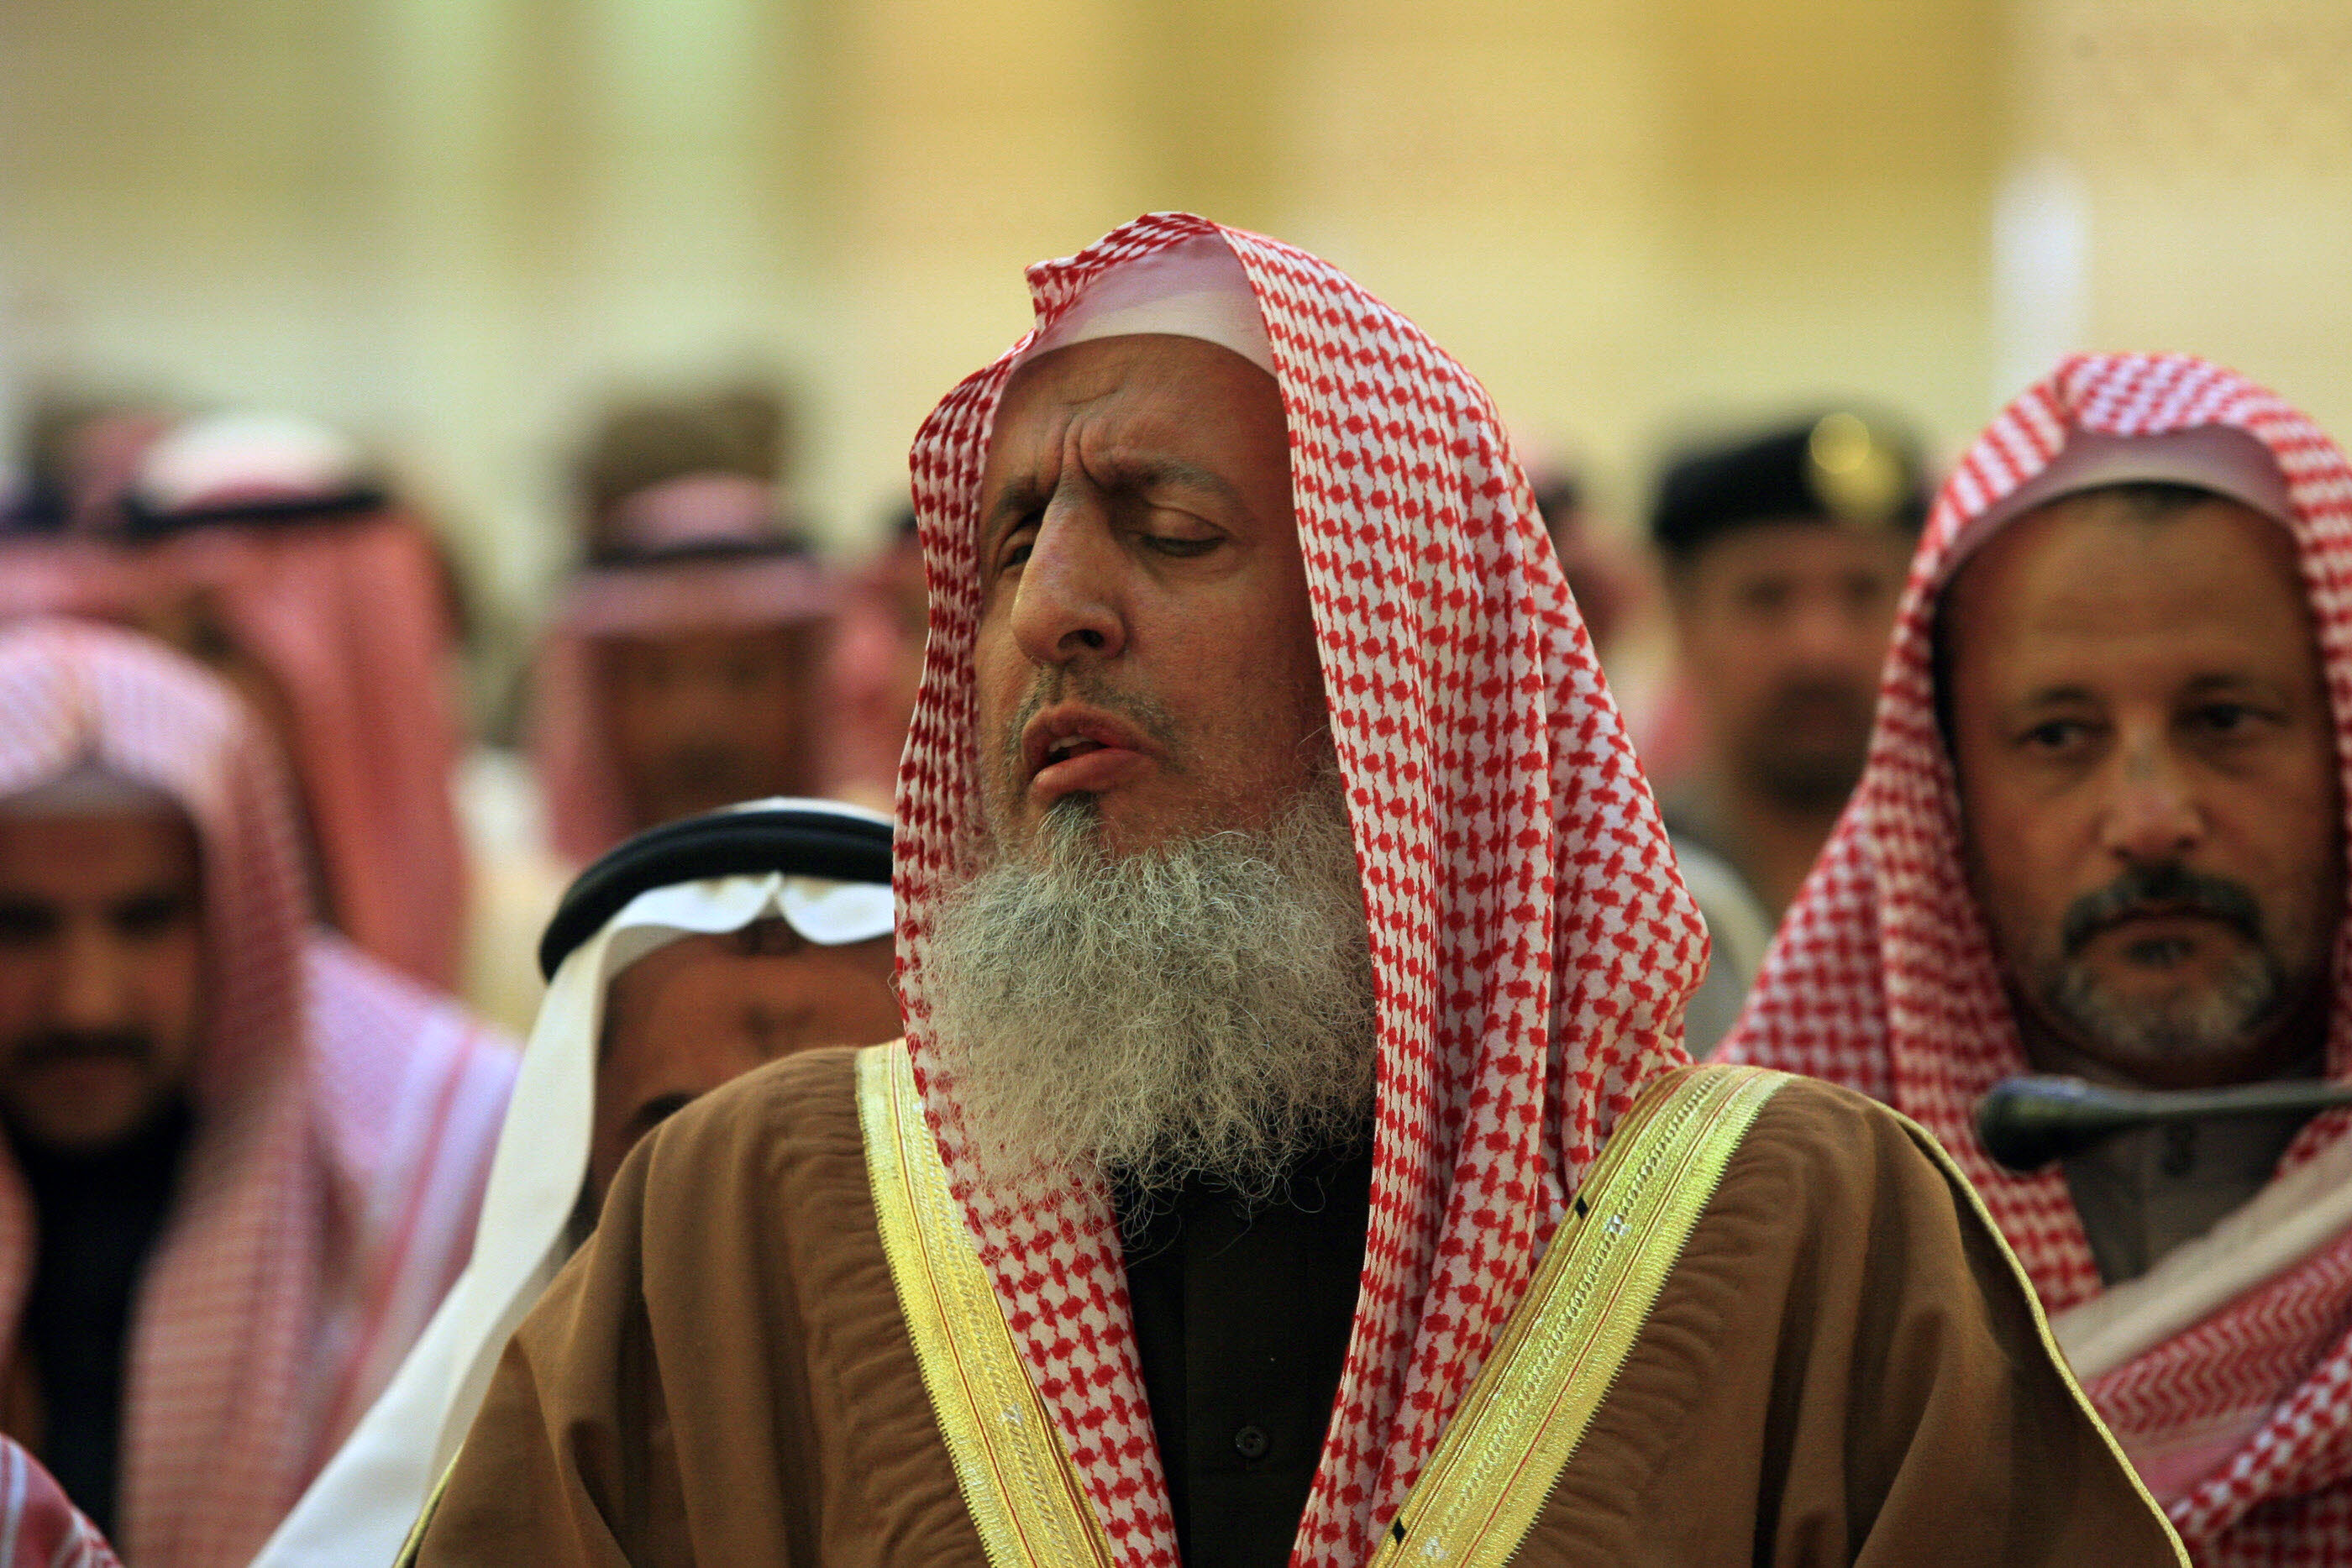 A szaúdi főmufti szerint ha a nők vezethetnének, kiszolgáltatnák magukat az ördögnek